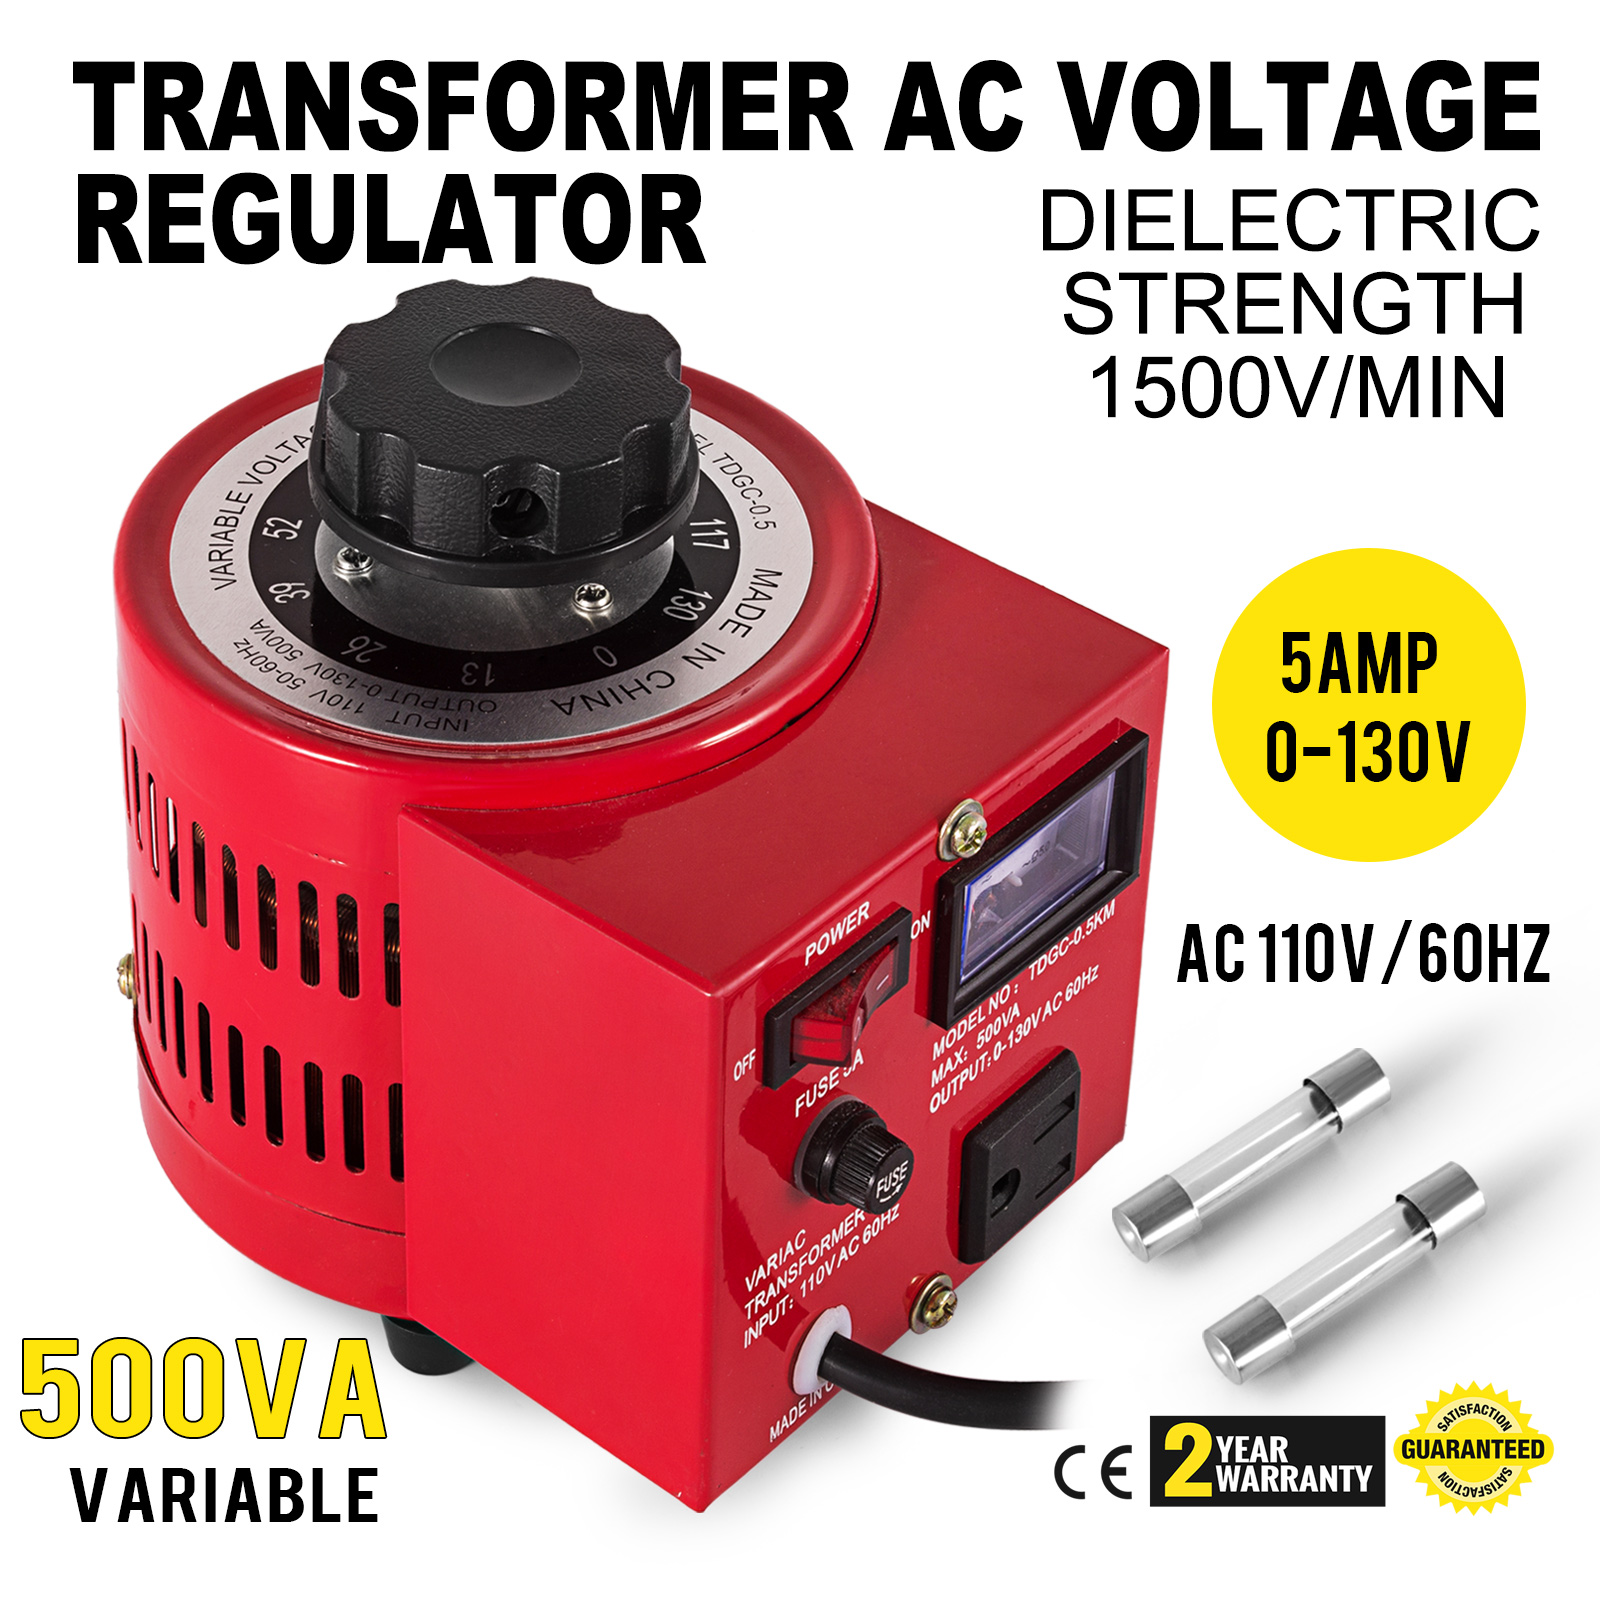 5Amp Variac Transformer Variable AC Voltage Regulator Metered 500w 0-130V